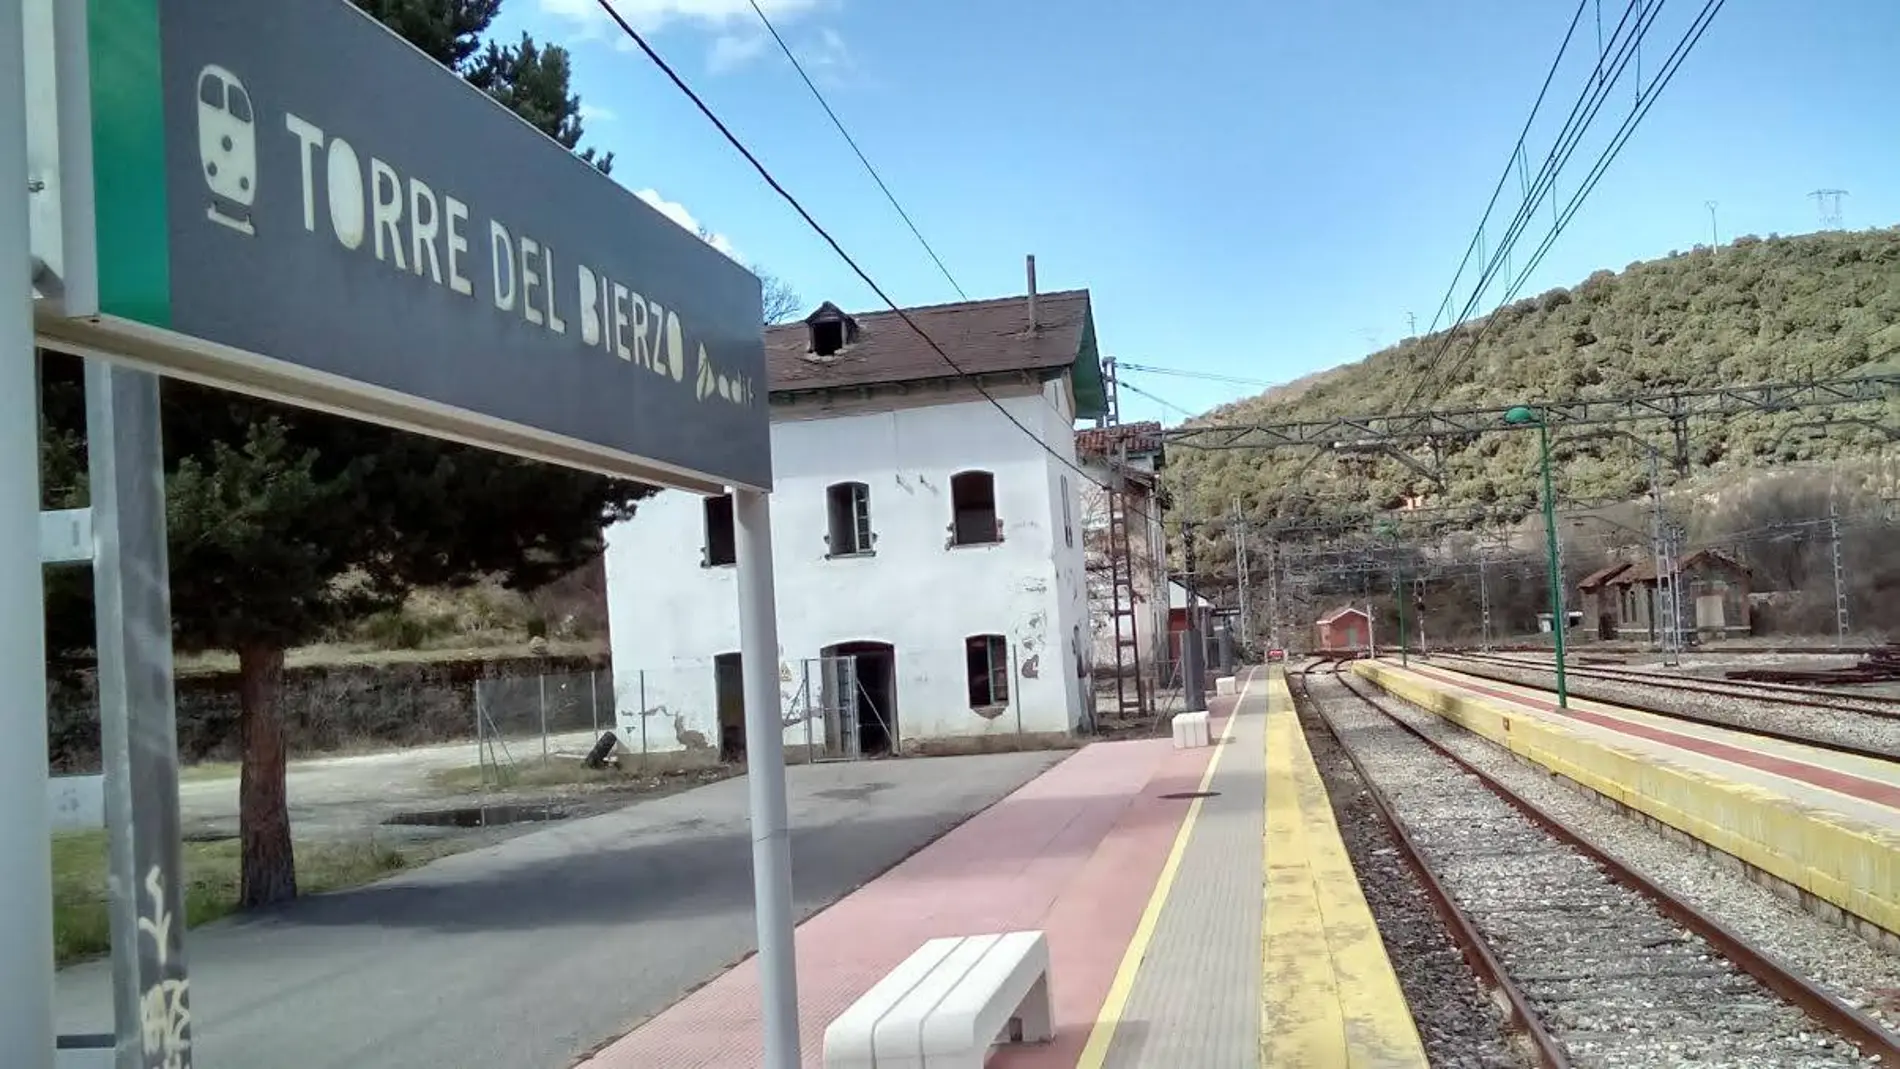 Estación de Torre del Bierzo, que acogerá el muso para honrar a las víctimas del accidente ferroviario